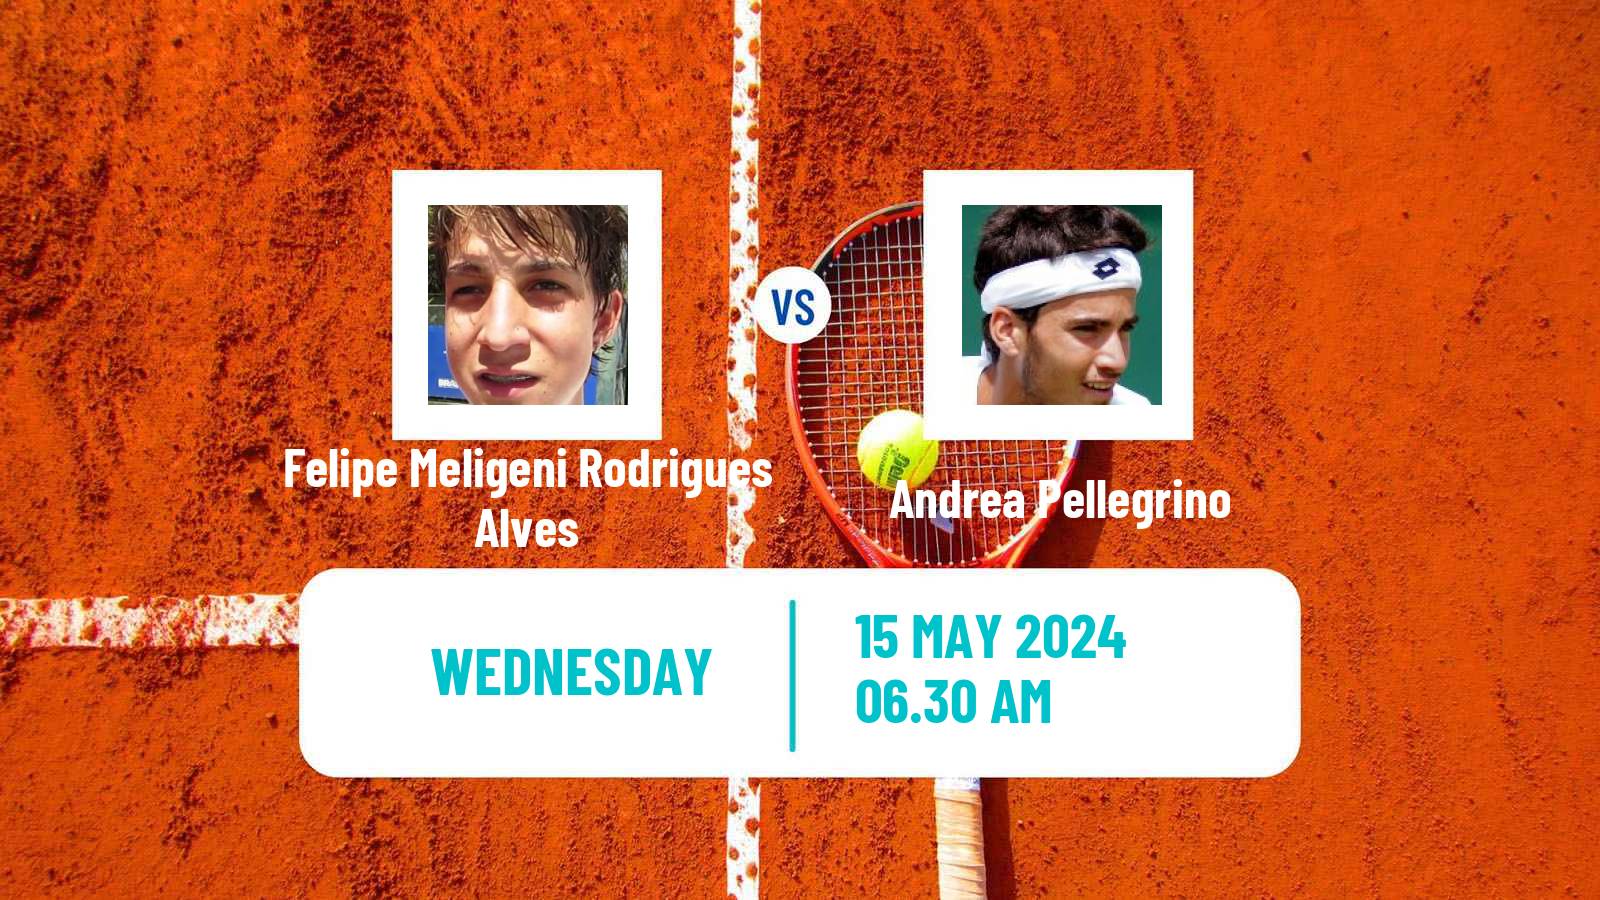 Tennis Turin 2 Challenger Men Felipe Meligeni Rodrigues Alves - Andrea Pellegrino